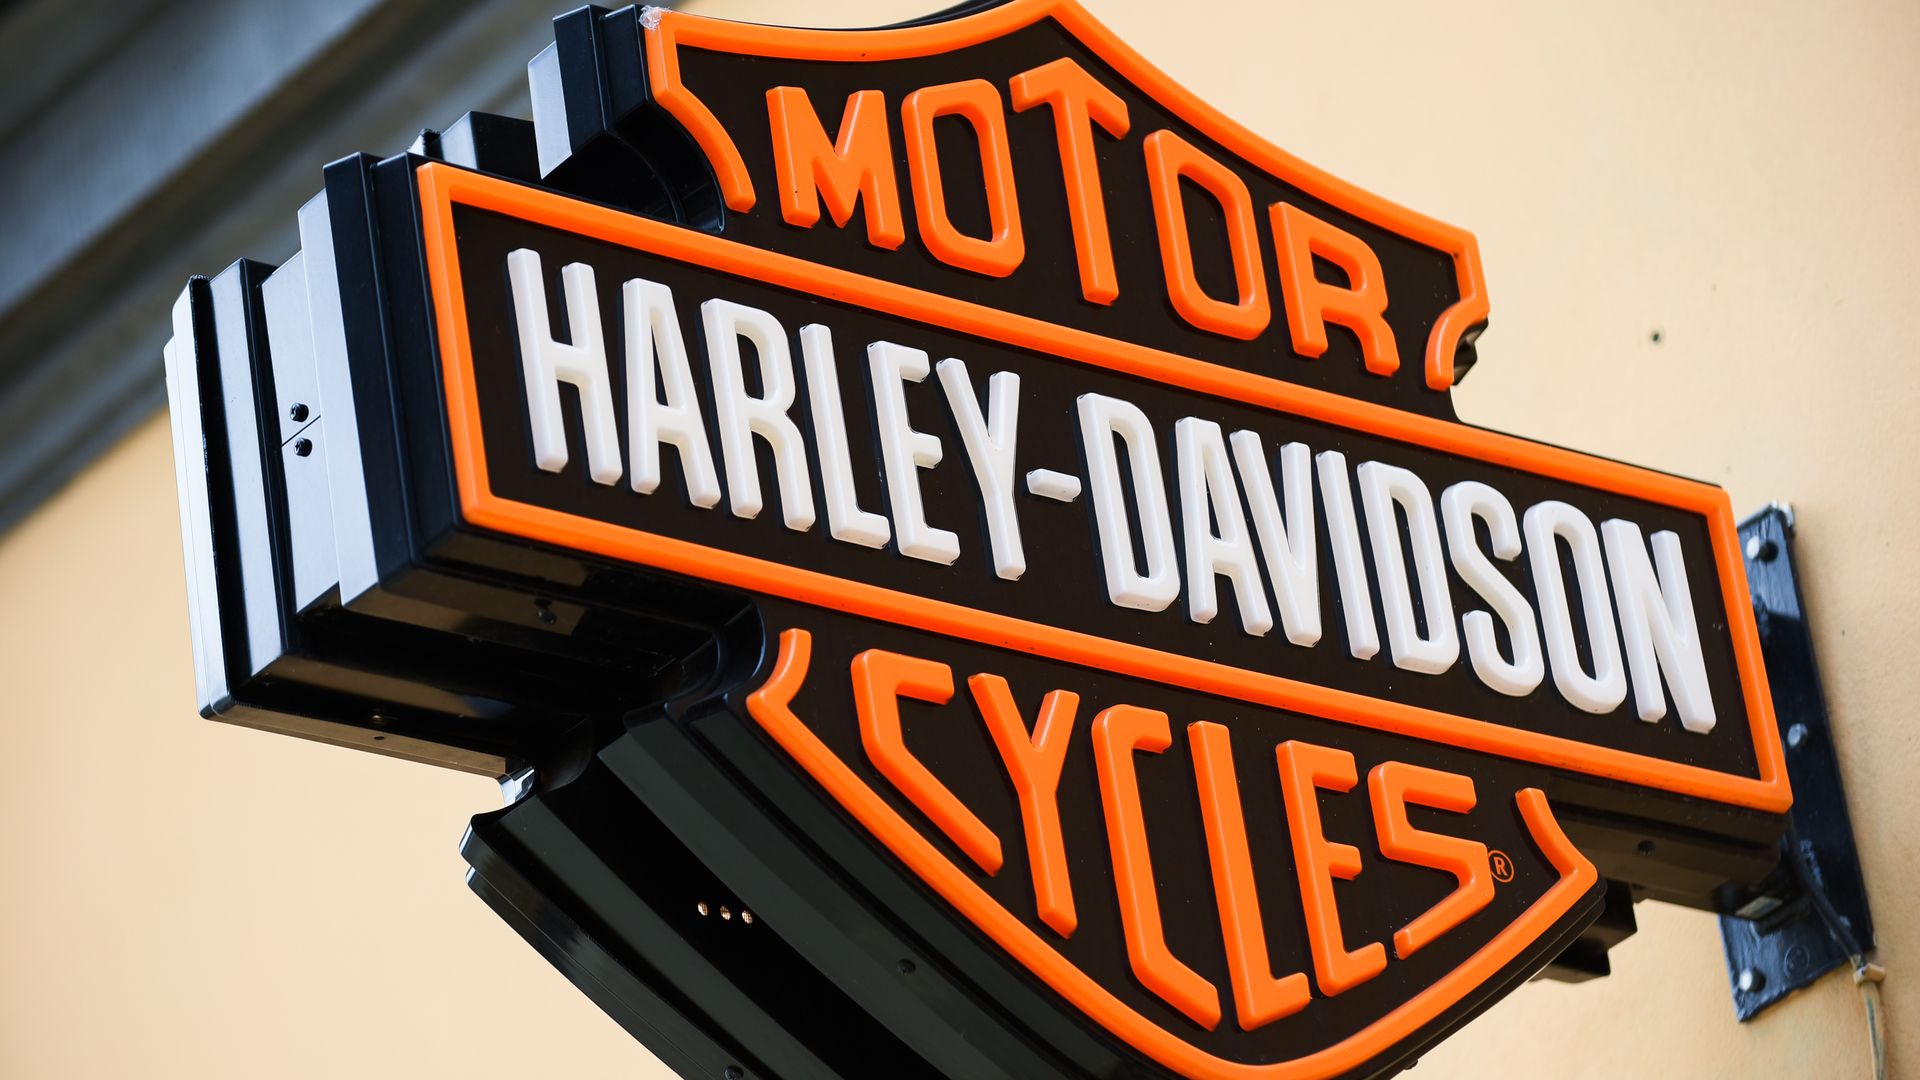 A Harley Davidson logo in Krakow